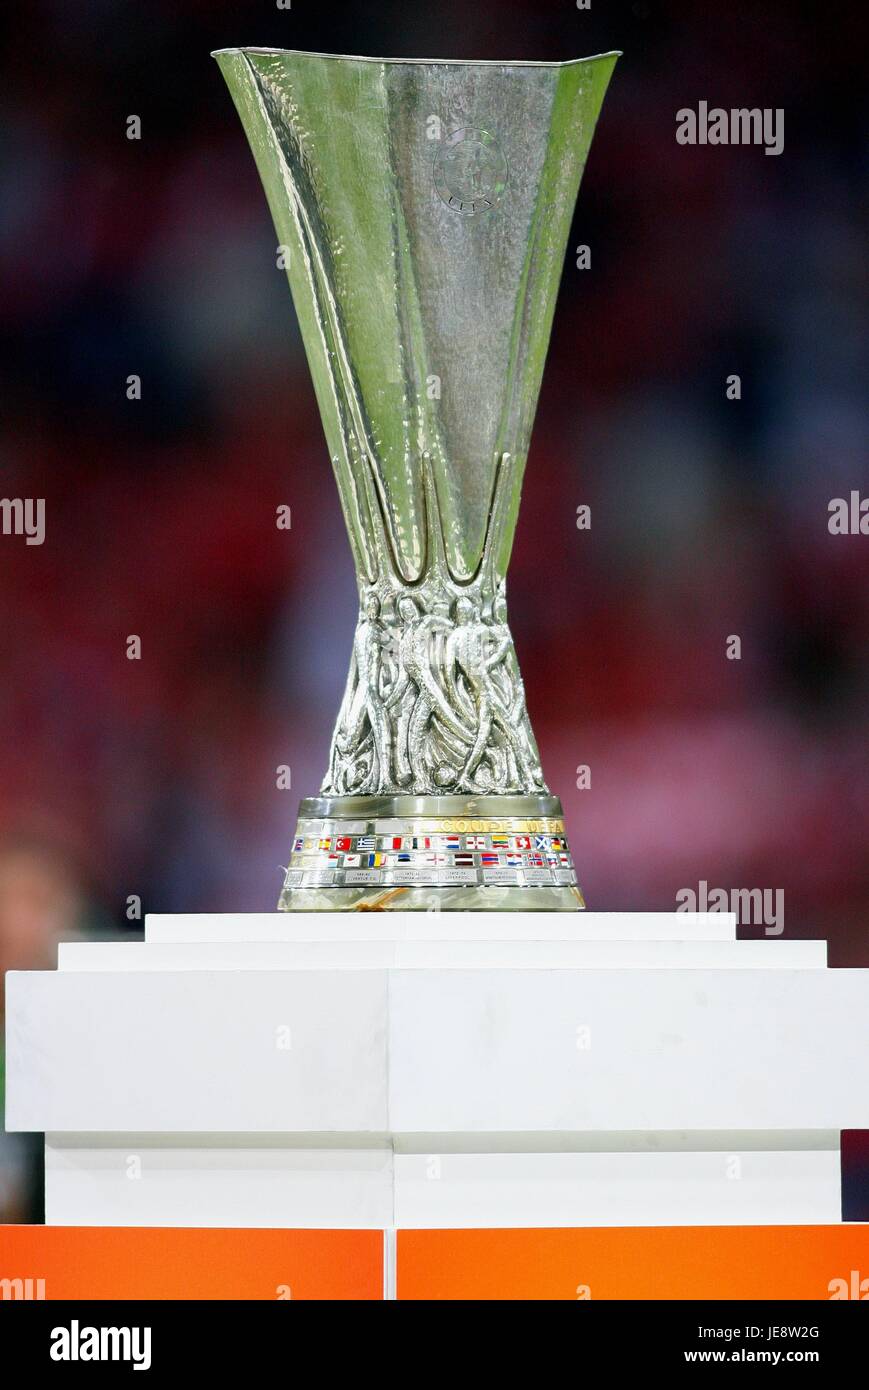 Les trophées de l'UEFA – Trophées du foot